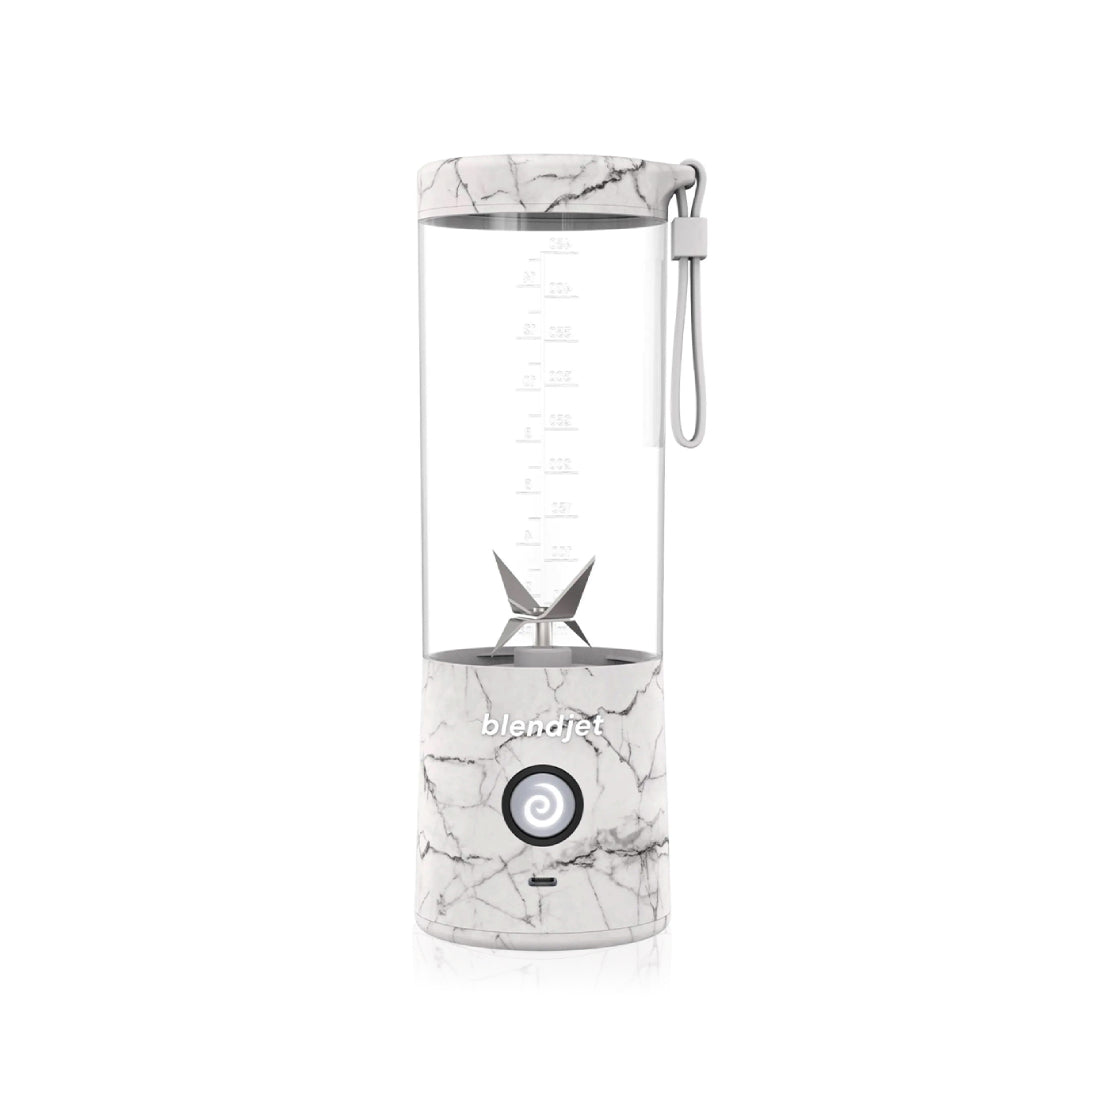 BlendJet 2 Portable Blender - White Marble - خلاط